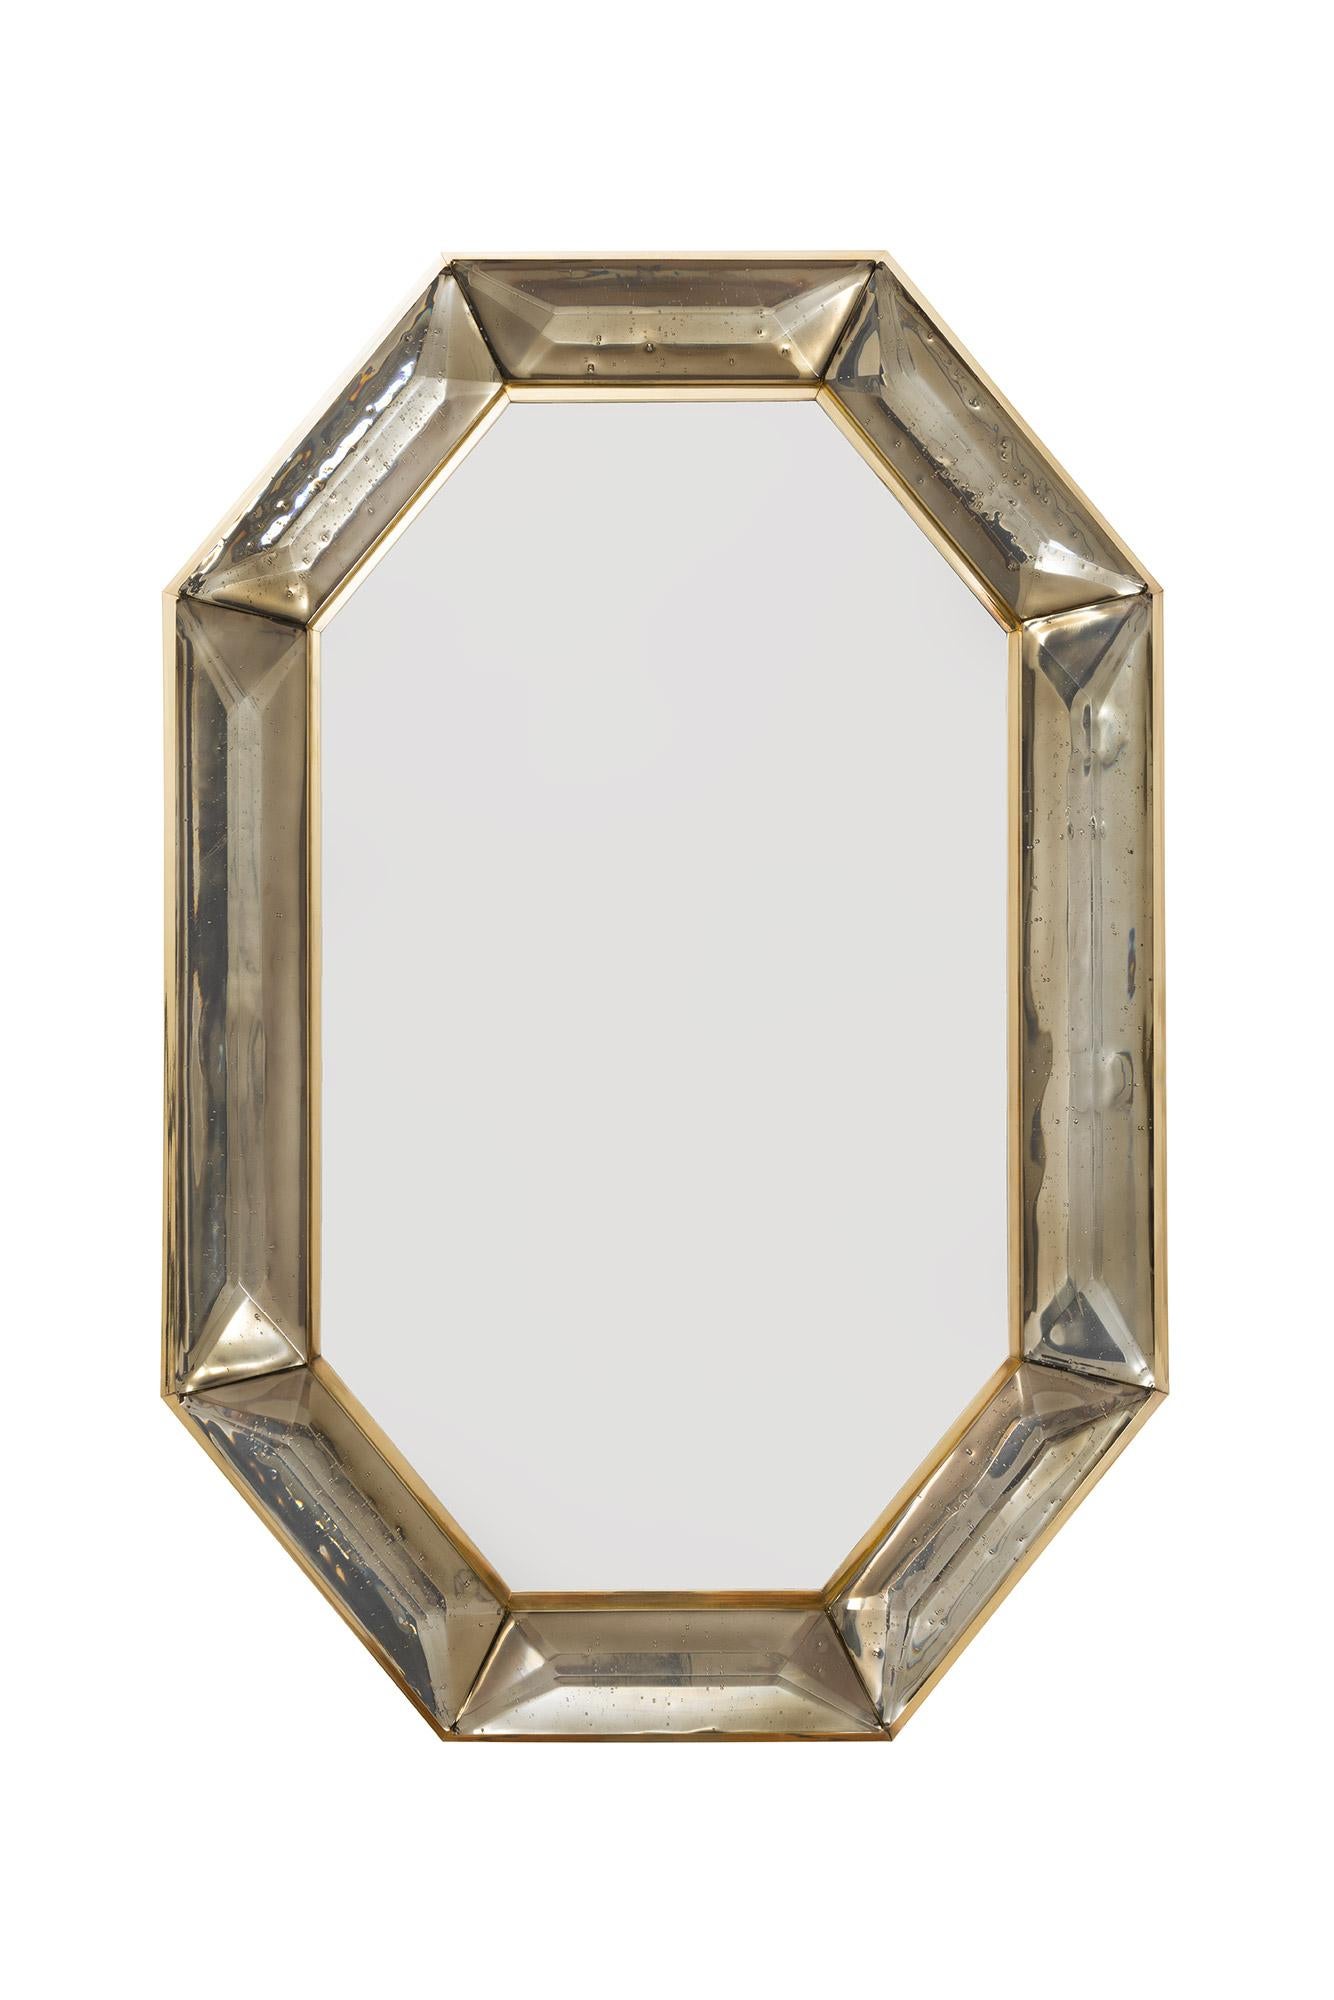 Miroir octogonal sur mesure en verre fumé de Murano, en stock
 Bloc de verre fumé ou bronze, vif et intense, avec des inclusions d'air d'origine naturelle. 
 Motif à facettes hautement poli
 (a) Gallery Gallery tout autour
 Chaque miroir est un